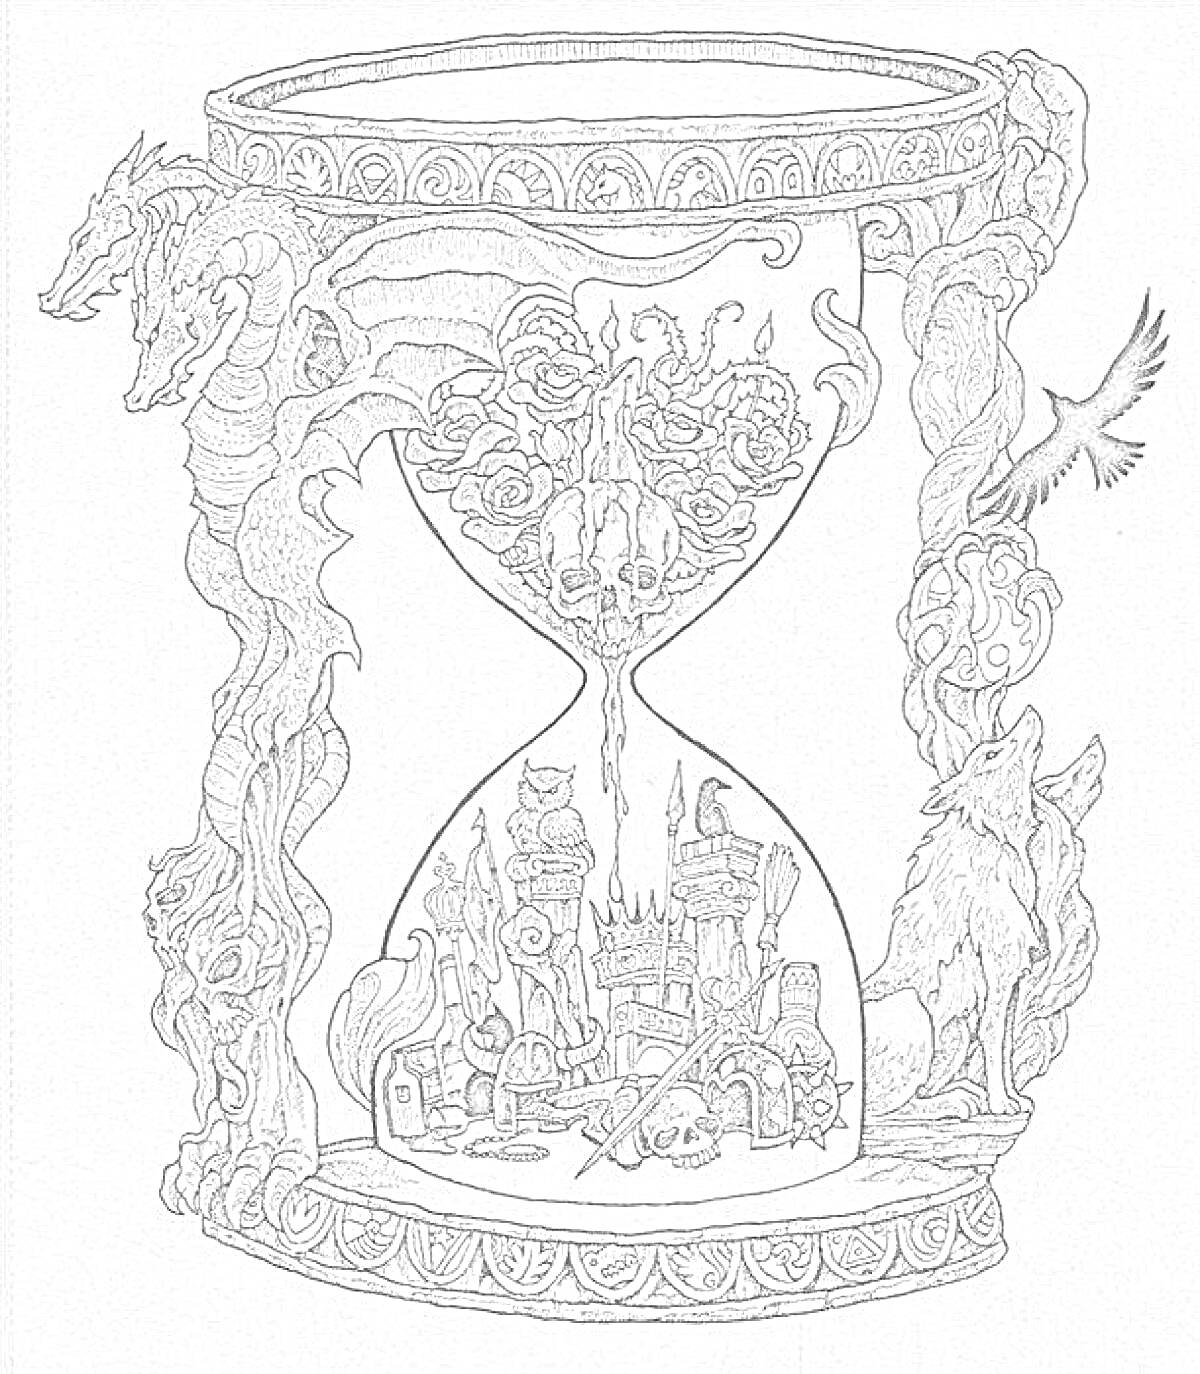 Раскраска Песочные часы с драконами, черепами, замком, совой, вороном, волком и книгами